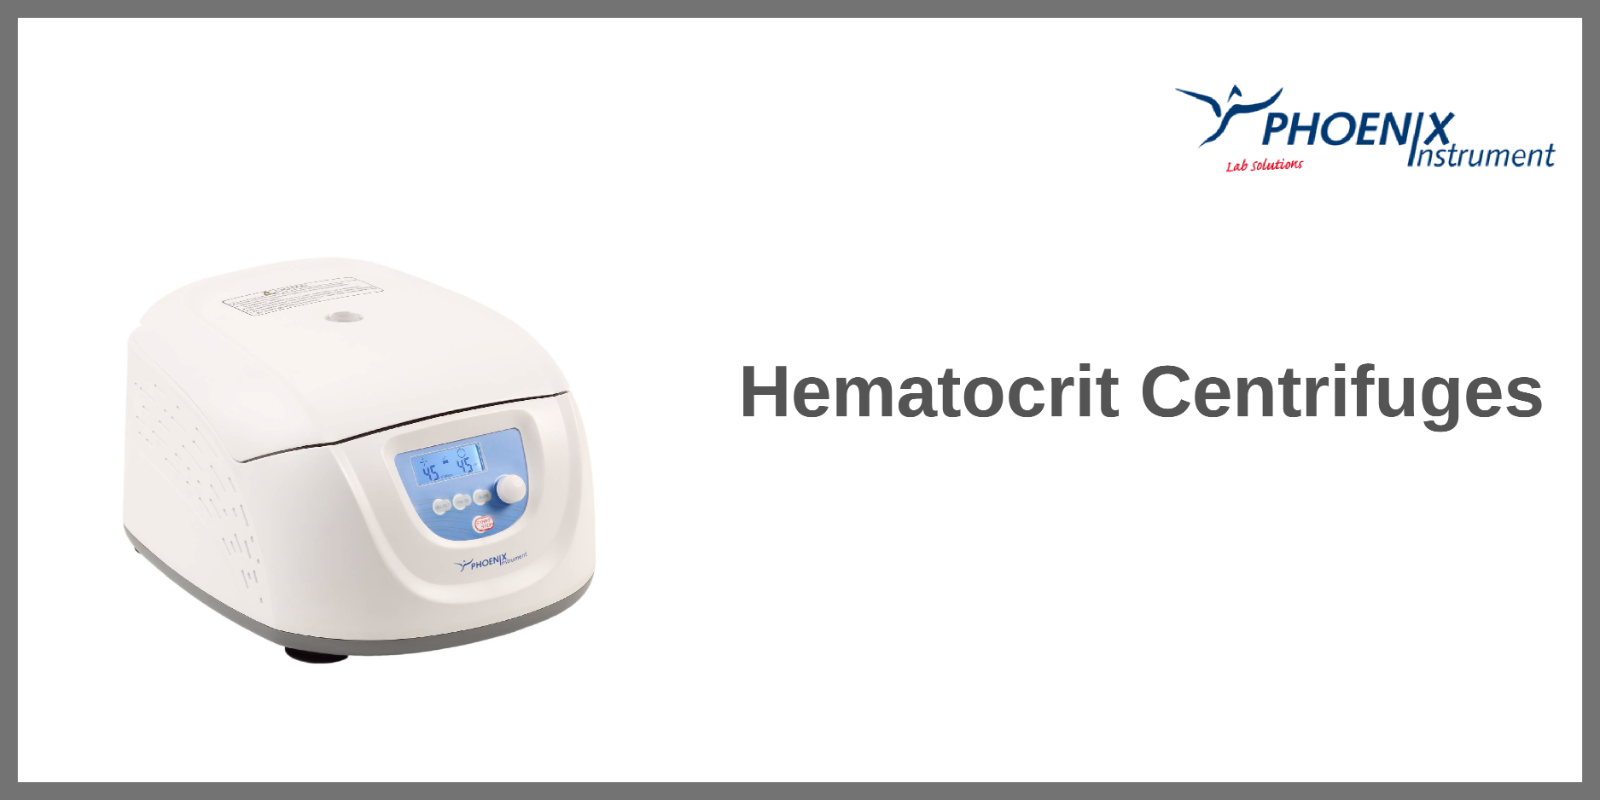 Hematocrit Centrifuges